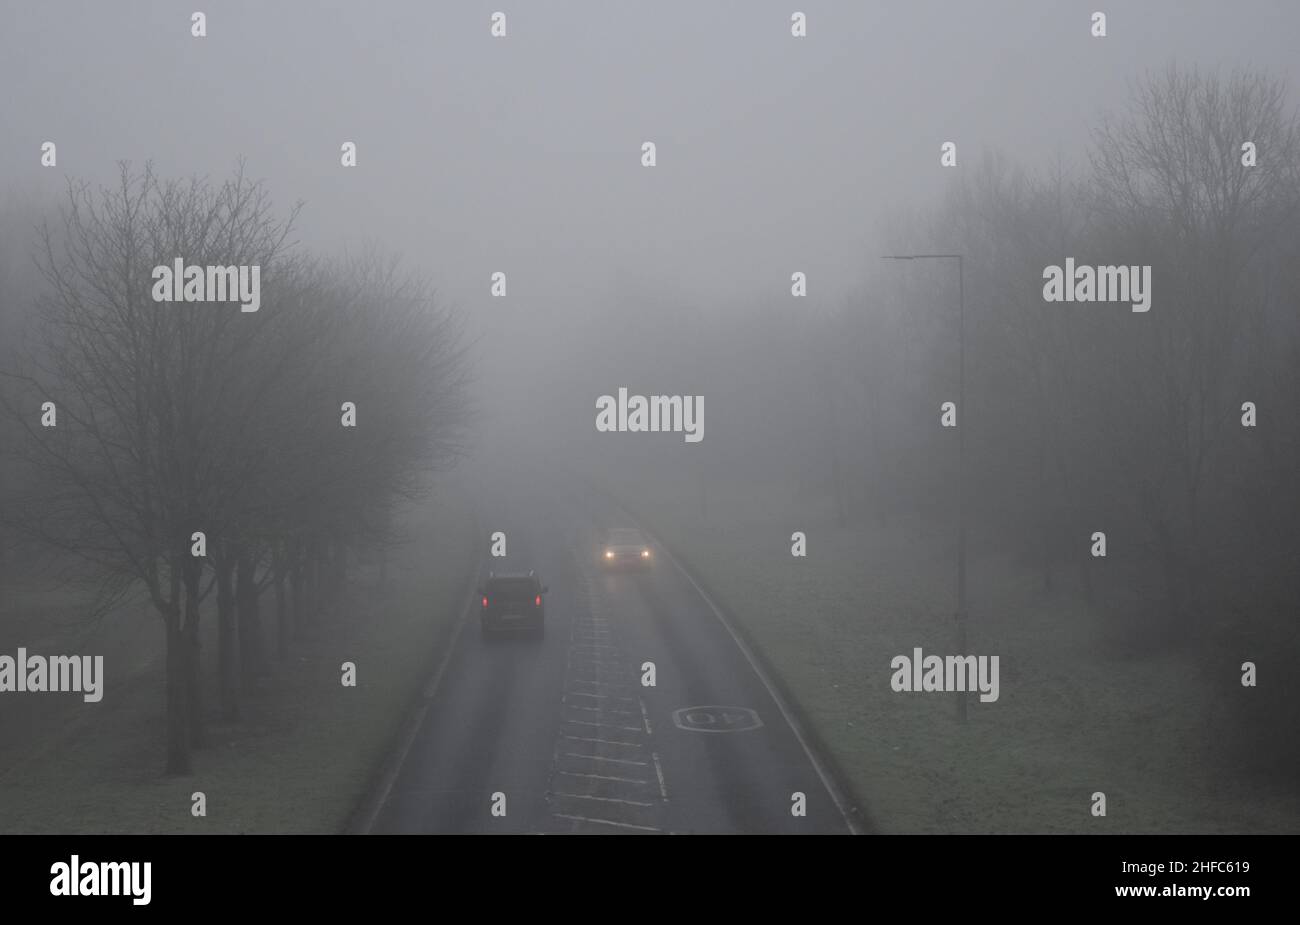 Una carretera foggy que muestra los vehículos con sus faros encendidos. Foto de stock